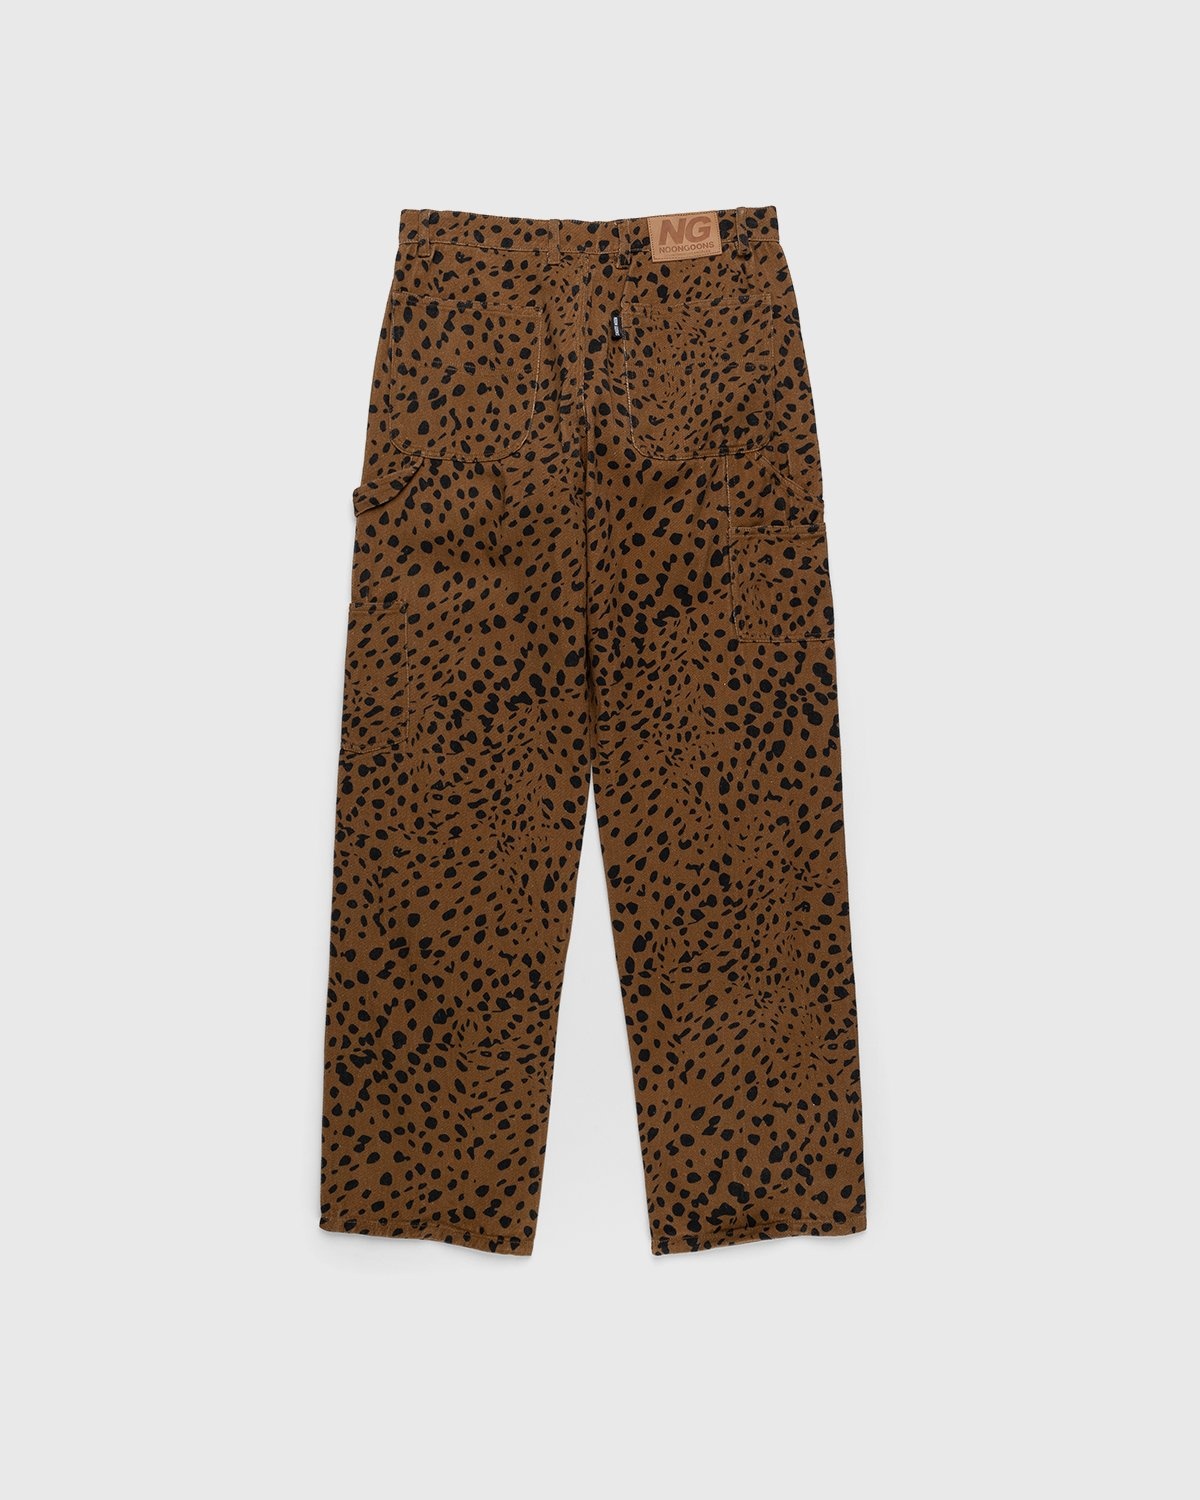 Noon Goons – Go Leopard Denim Pant Brown - Pants - Brown - Image 2